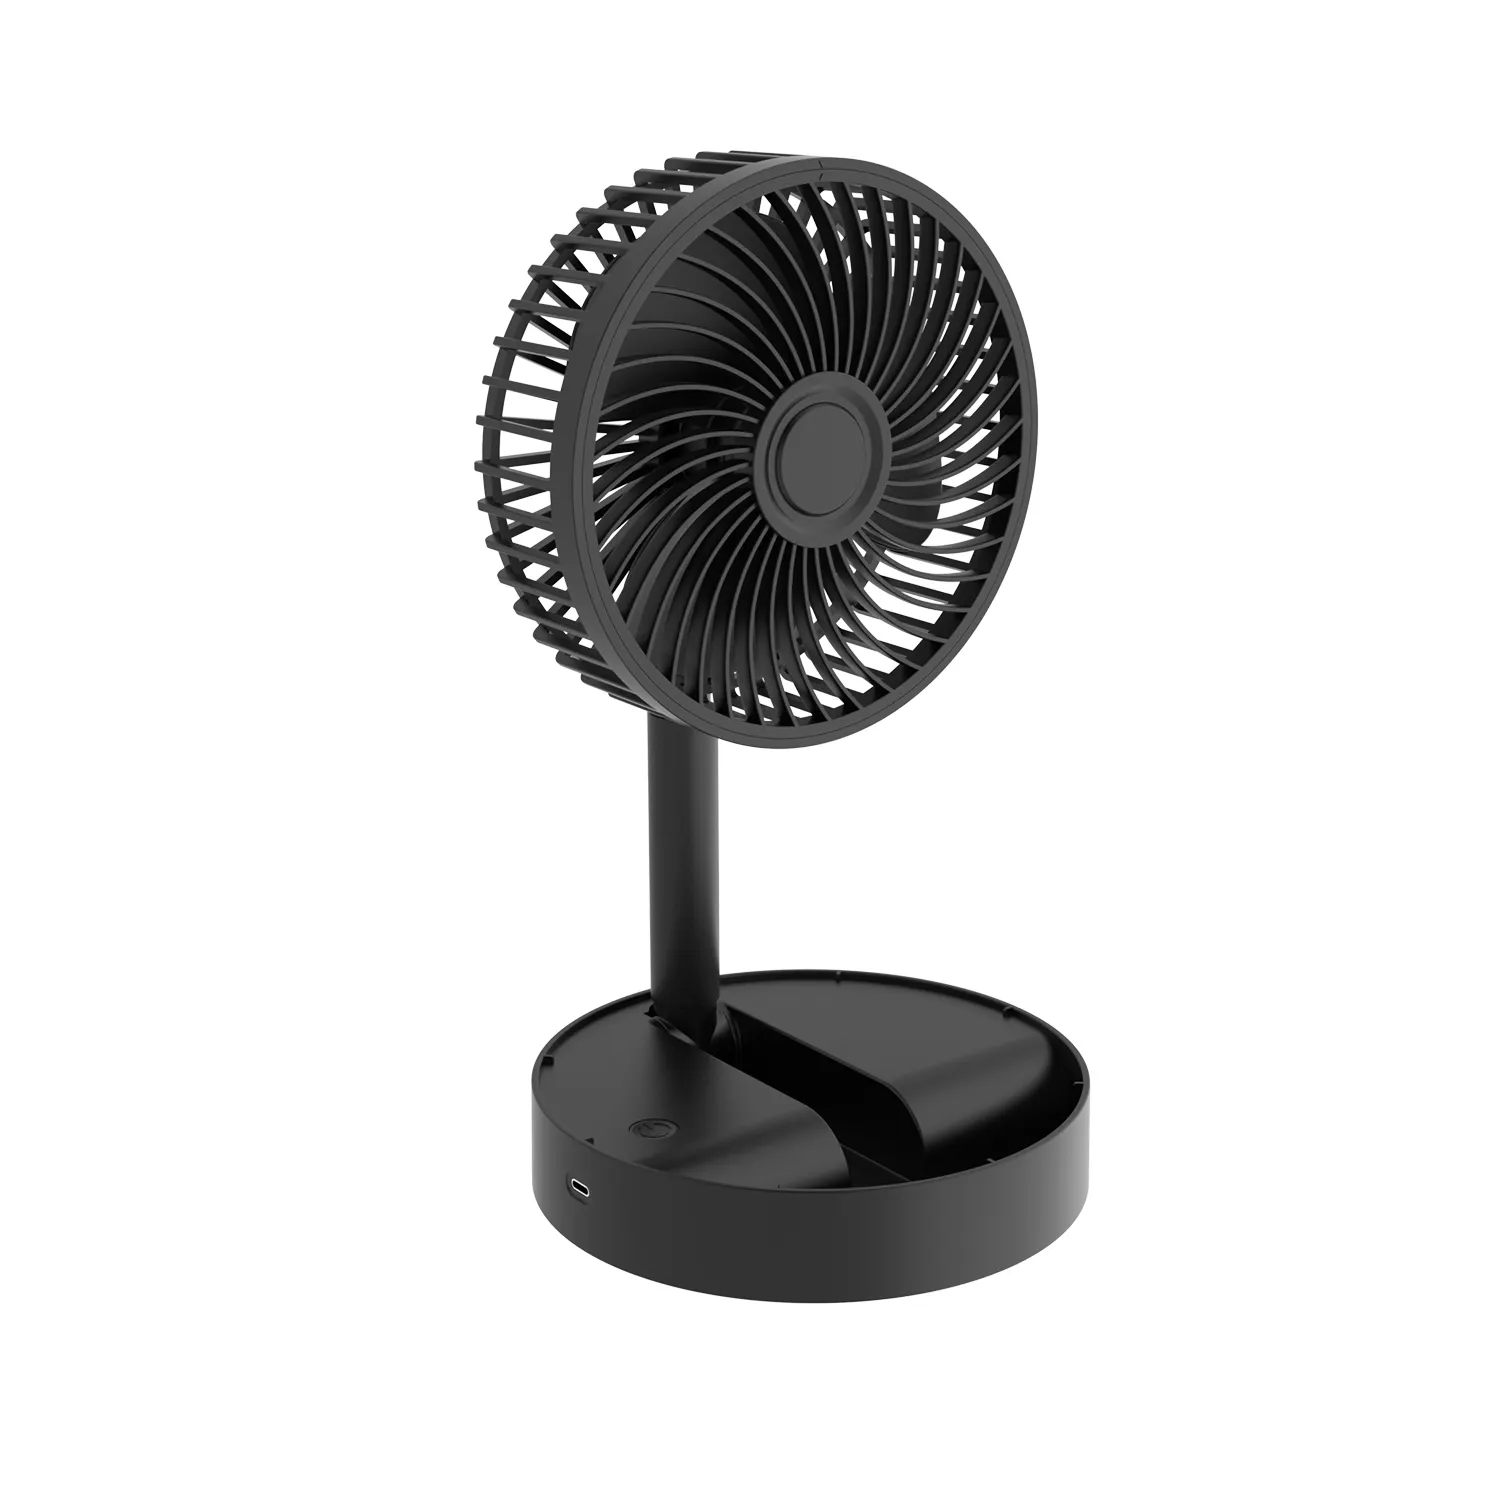 DOE CEC 5v Li-on Battery Plastic Rechargeable Wireless Air Cooling Folding Fan Desktop DC Table Fan Portable Electric Stand Fan